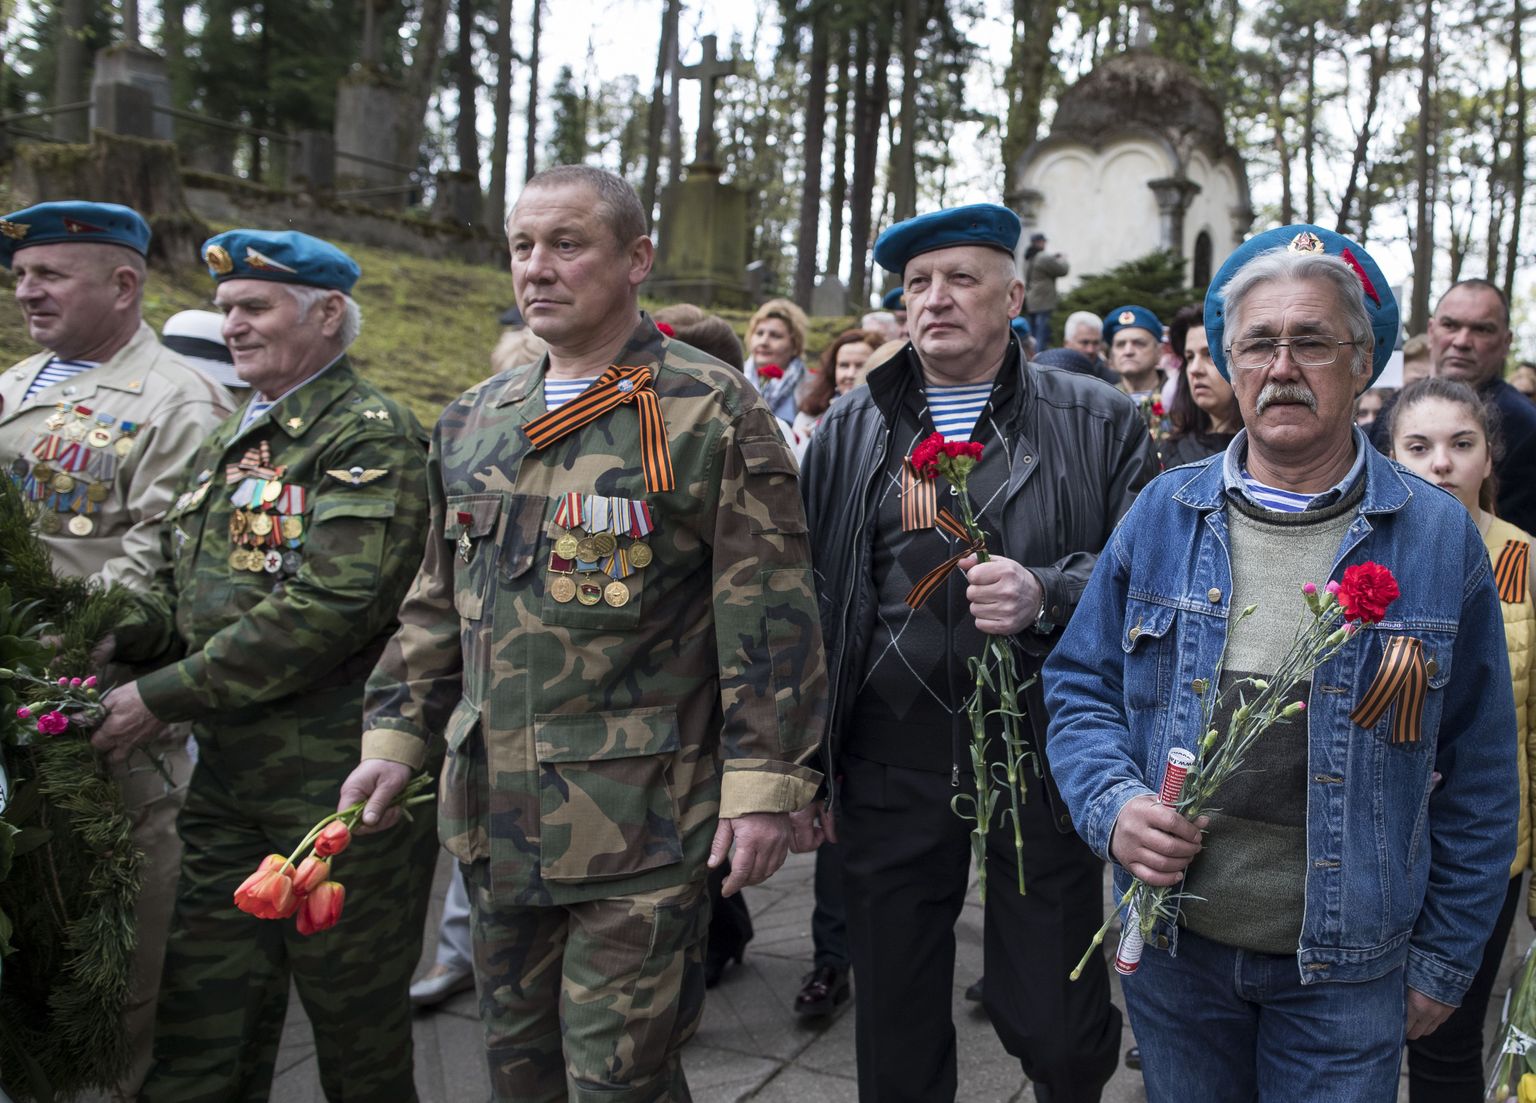 Georgi lite ja Nõukogude sõjaväevorme kandvad inimesed tänavu 9. mail Vilniuses Antakalnise kalmistul.